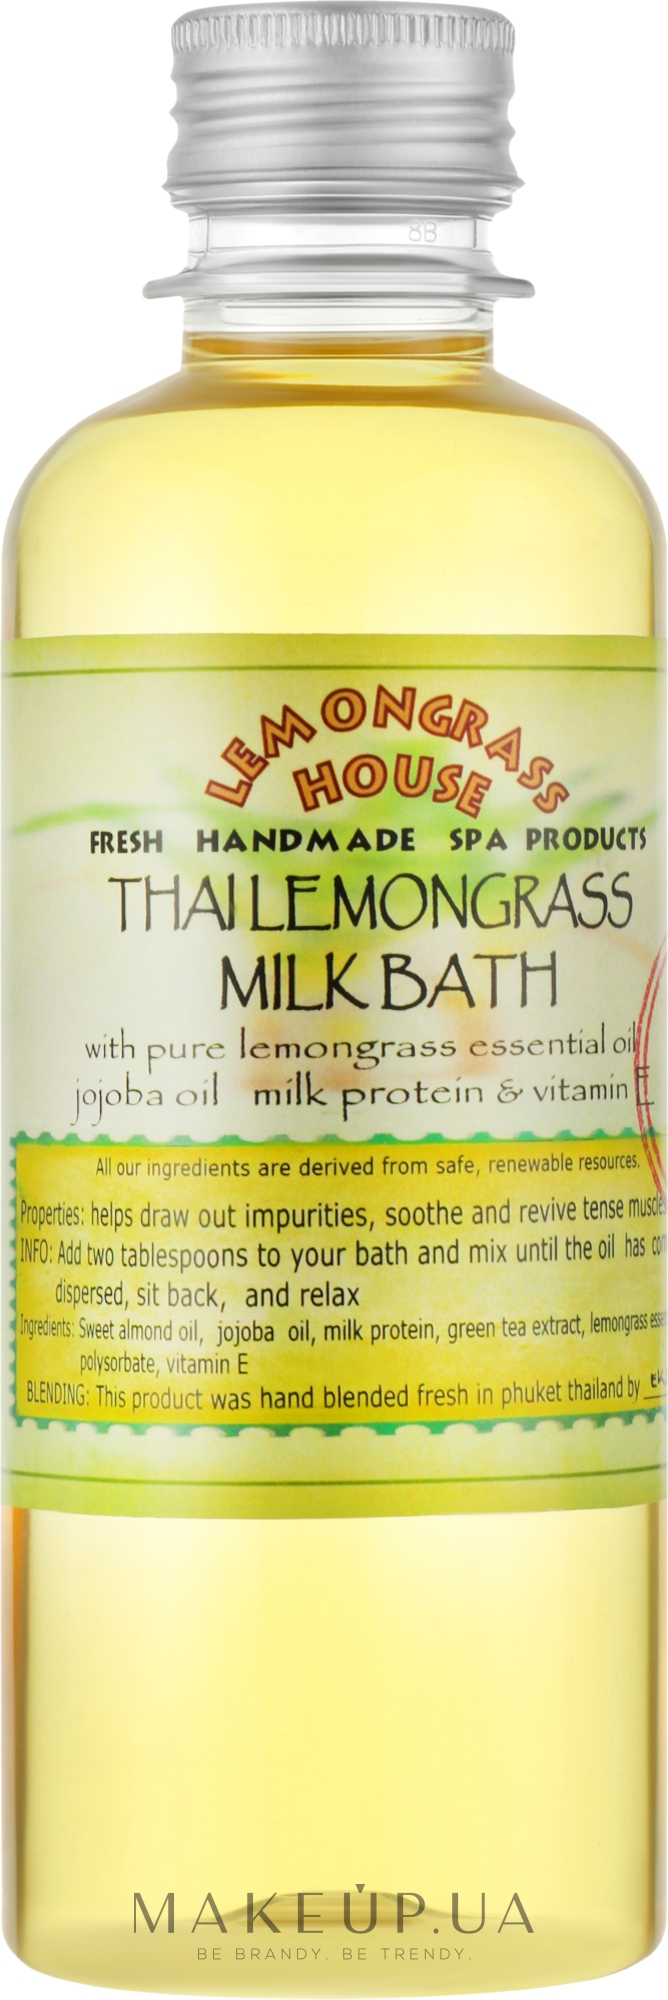 Молочна ванна "Лемограс" - Lemongrass House Thai Lemongrass Milk Bath — фото 250ml